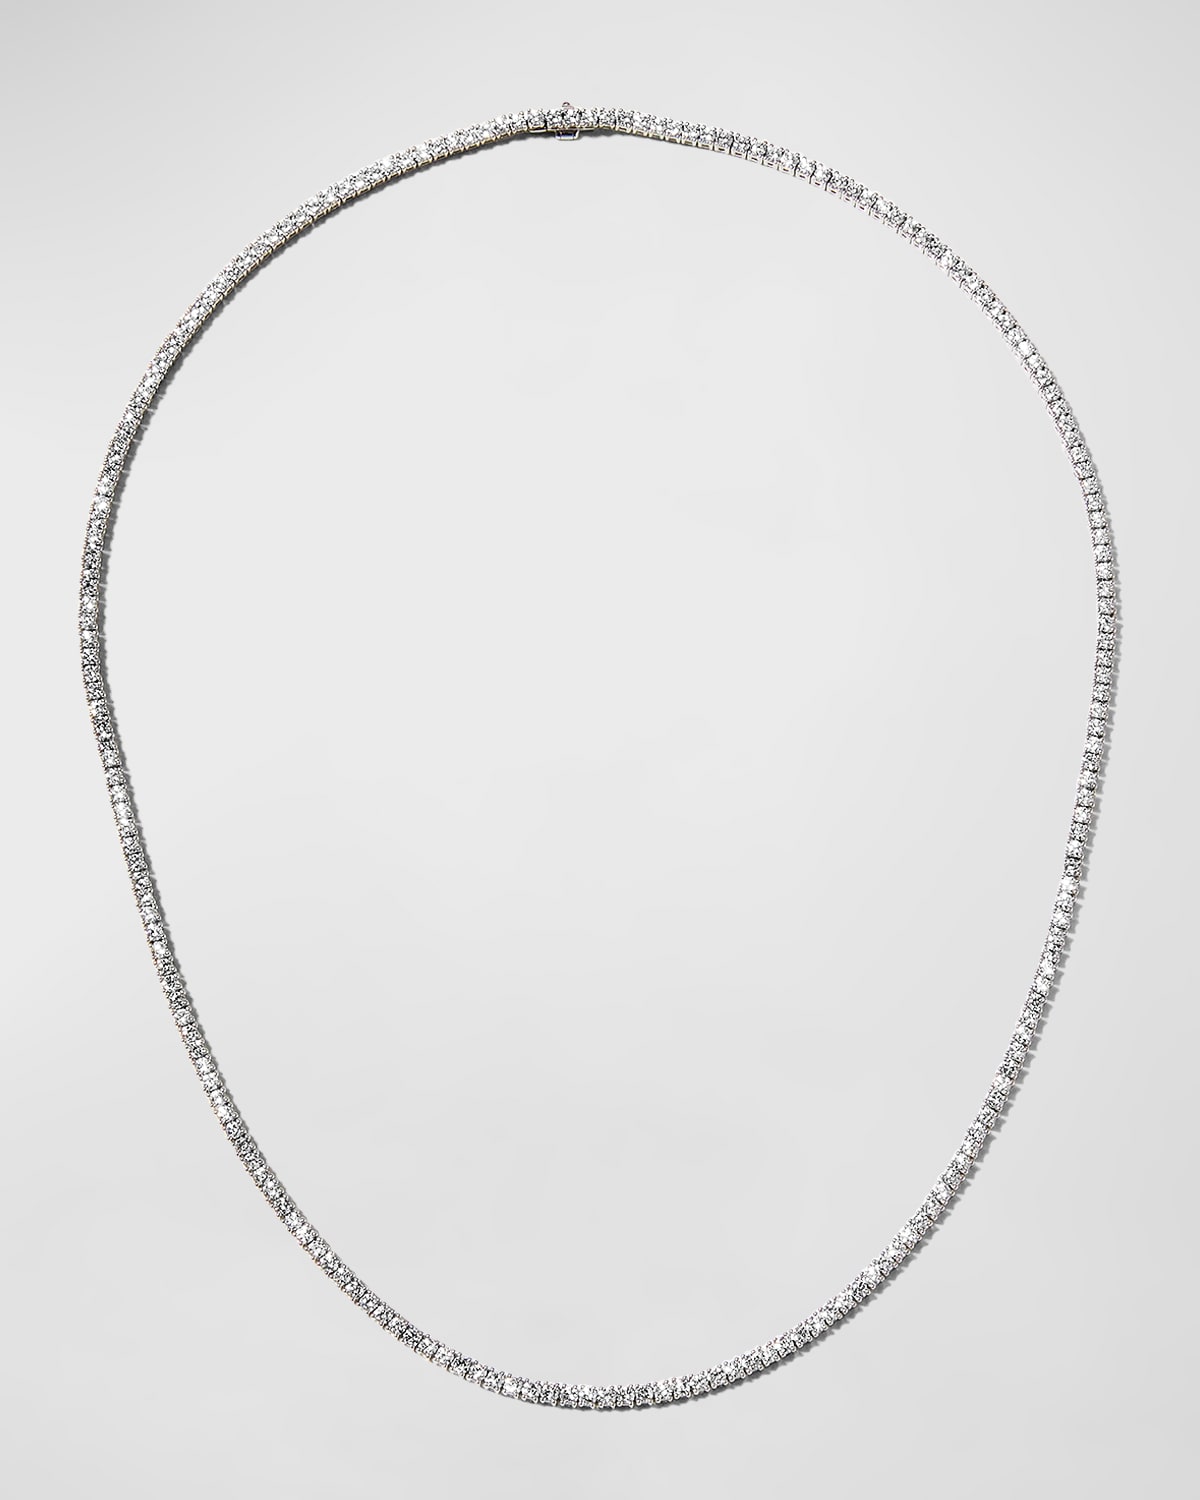 Memoire White Gold Diamond Straight Line Necklace, 16.5"L